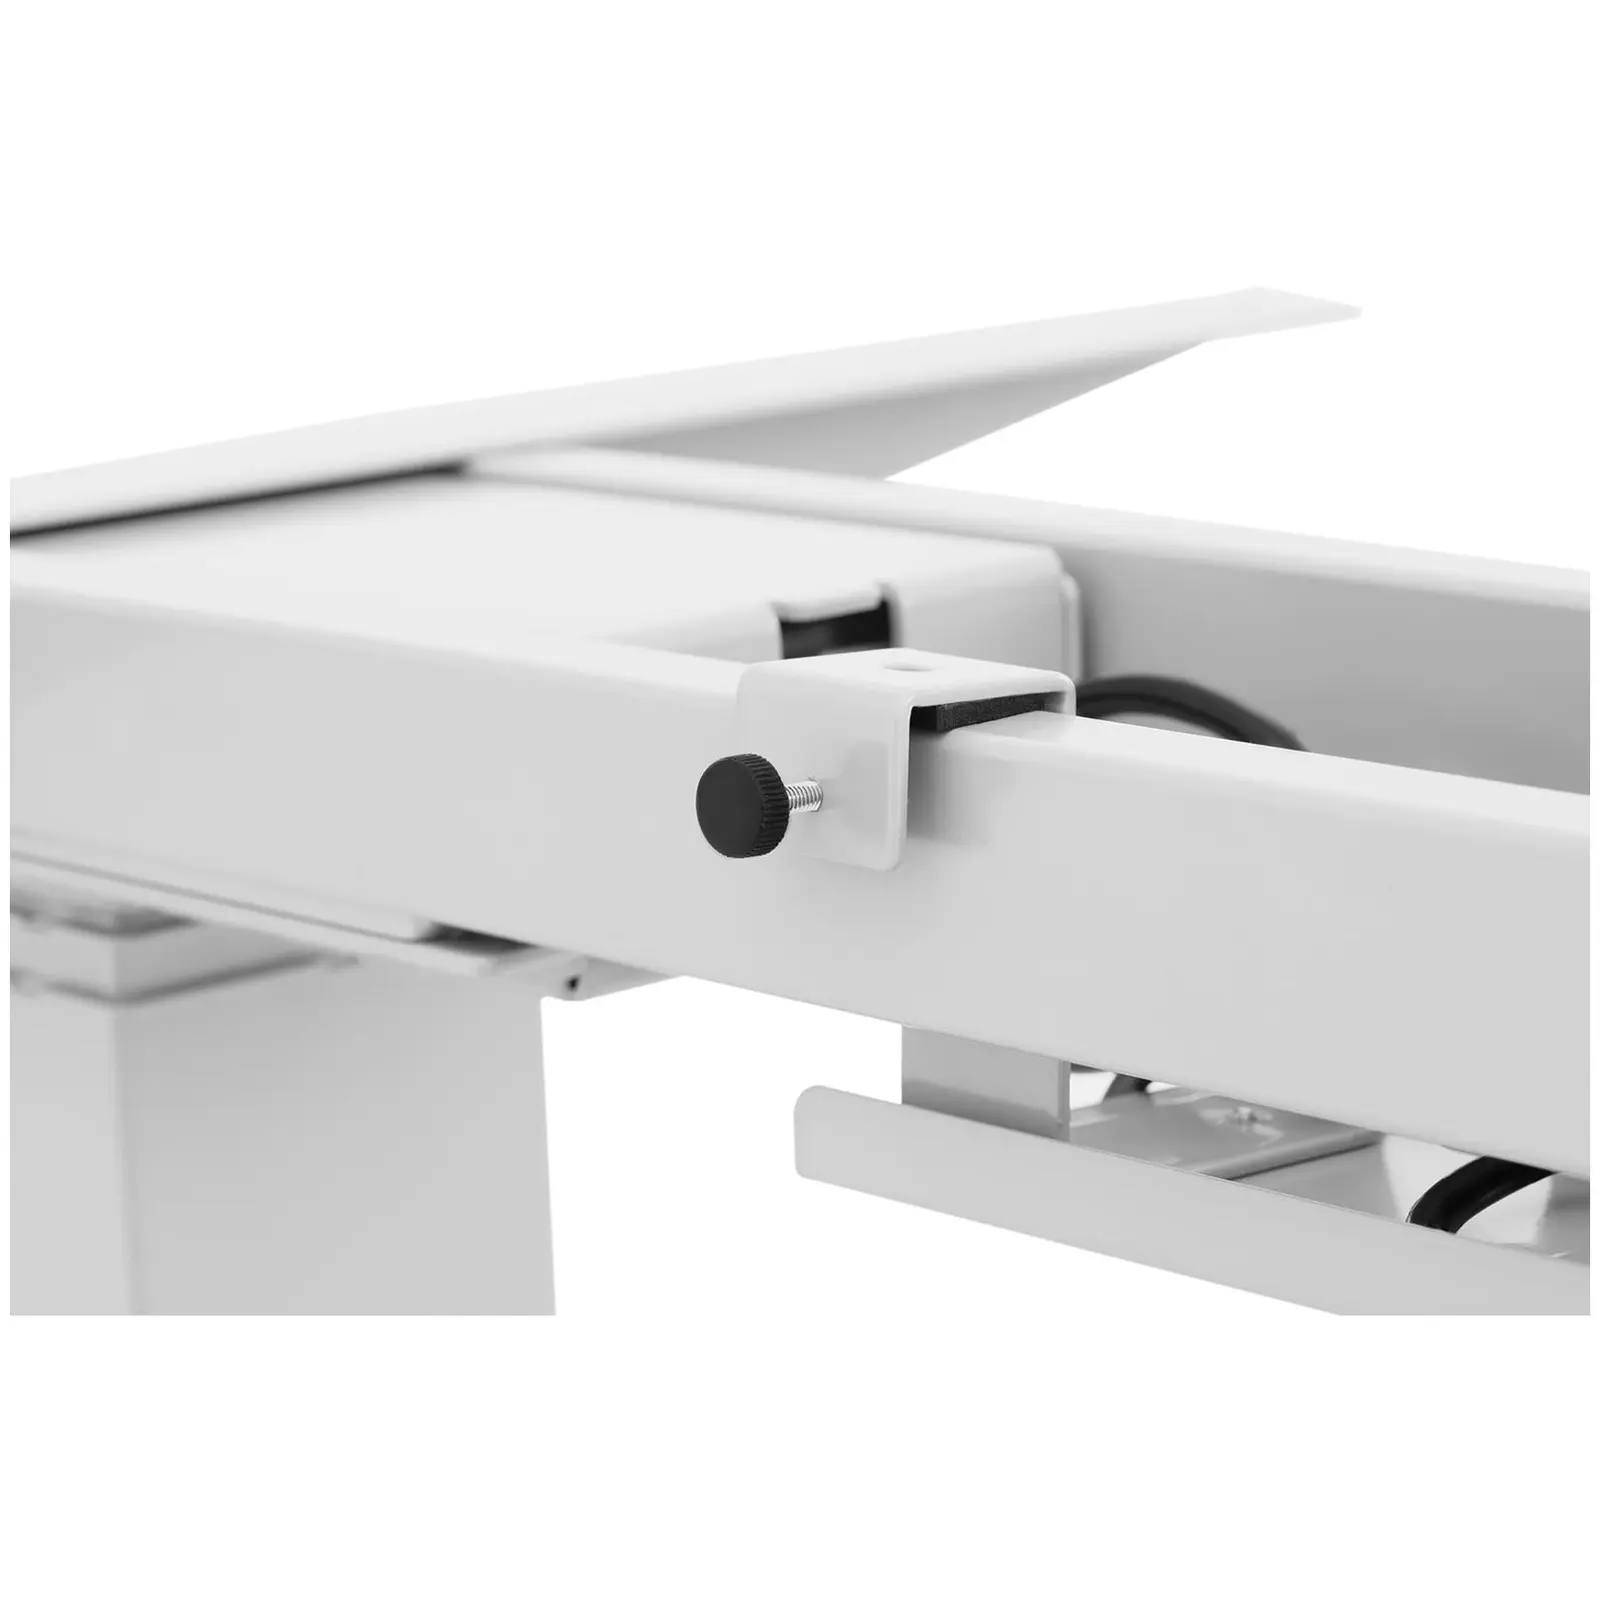 Höhenverstellbares Schreibtischgestell - 200 W - 100 kg - weiß